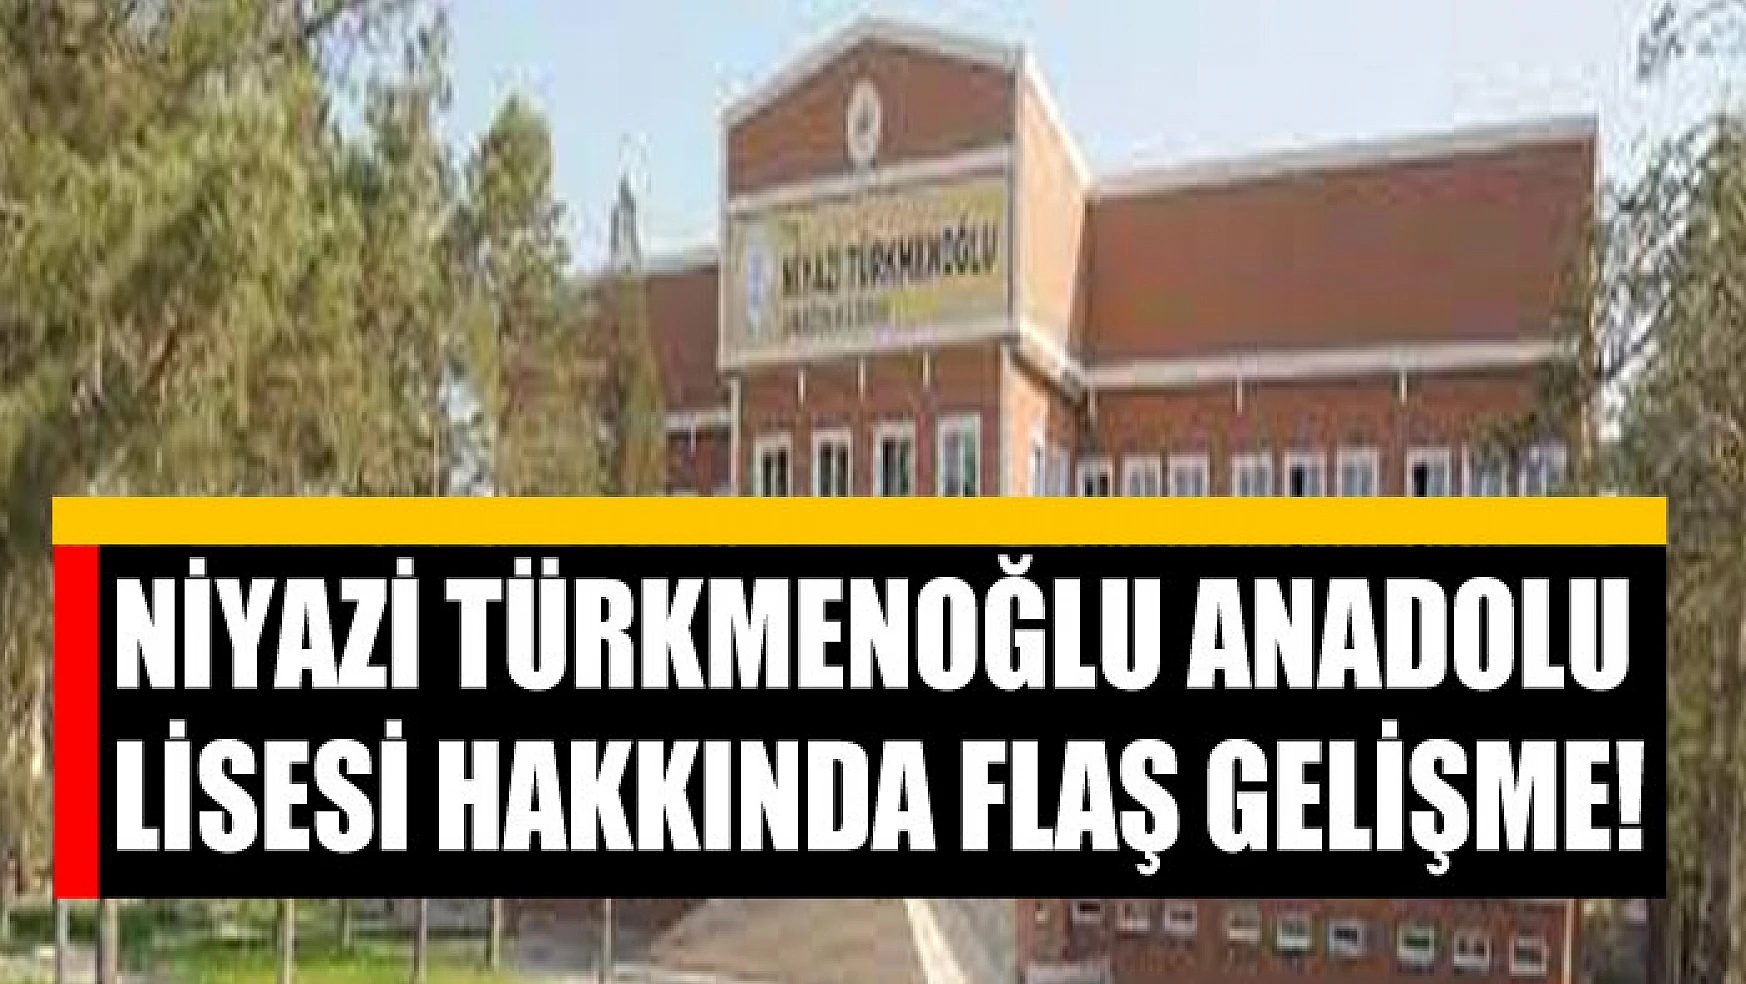 Niyazi Türkmenoğlu Anadolu Lisesi hakkında flaş gelişme!